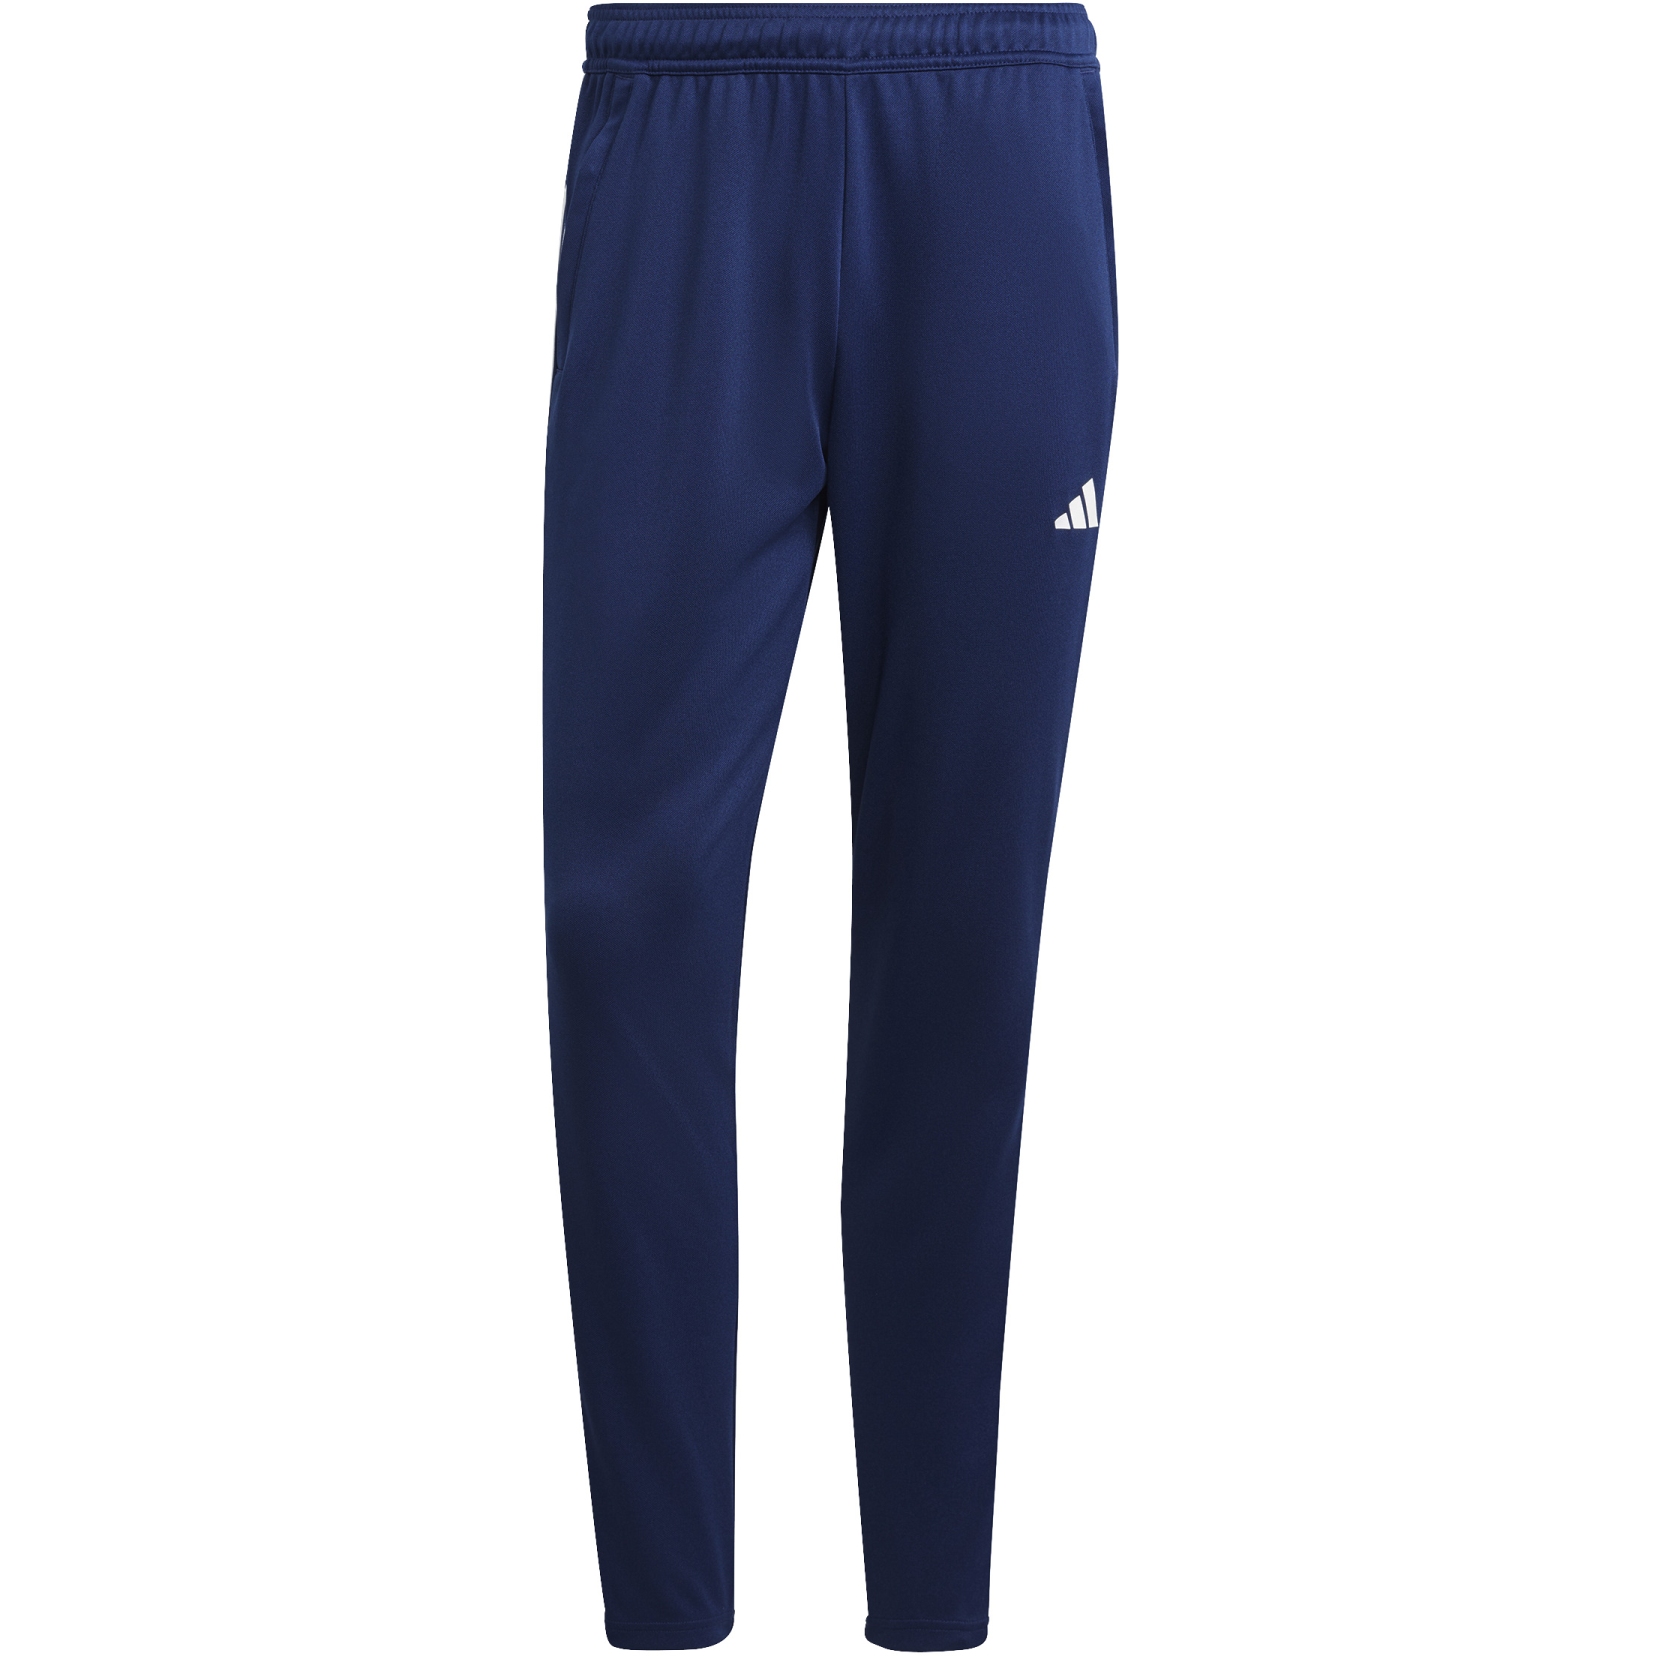 Produktbild von adidas Männer Train Essentials Jogginghose - dark blue/white IB8169